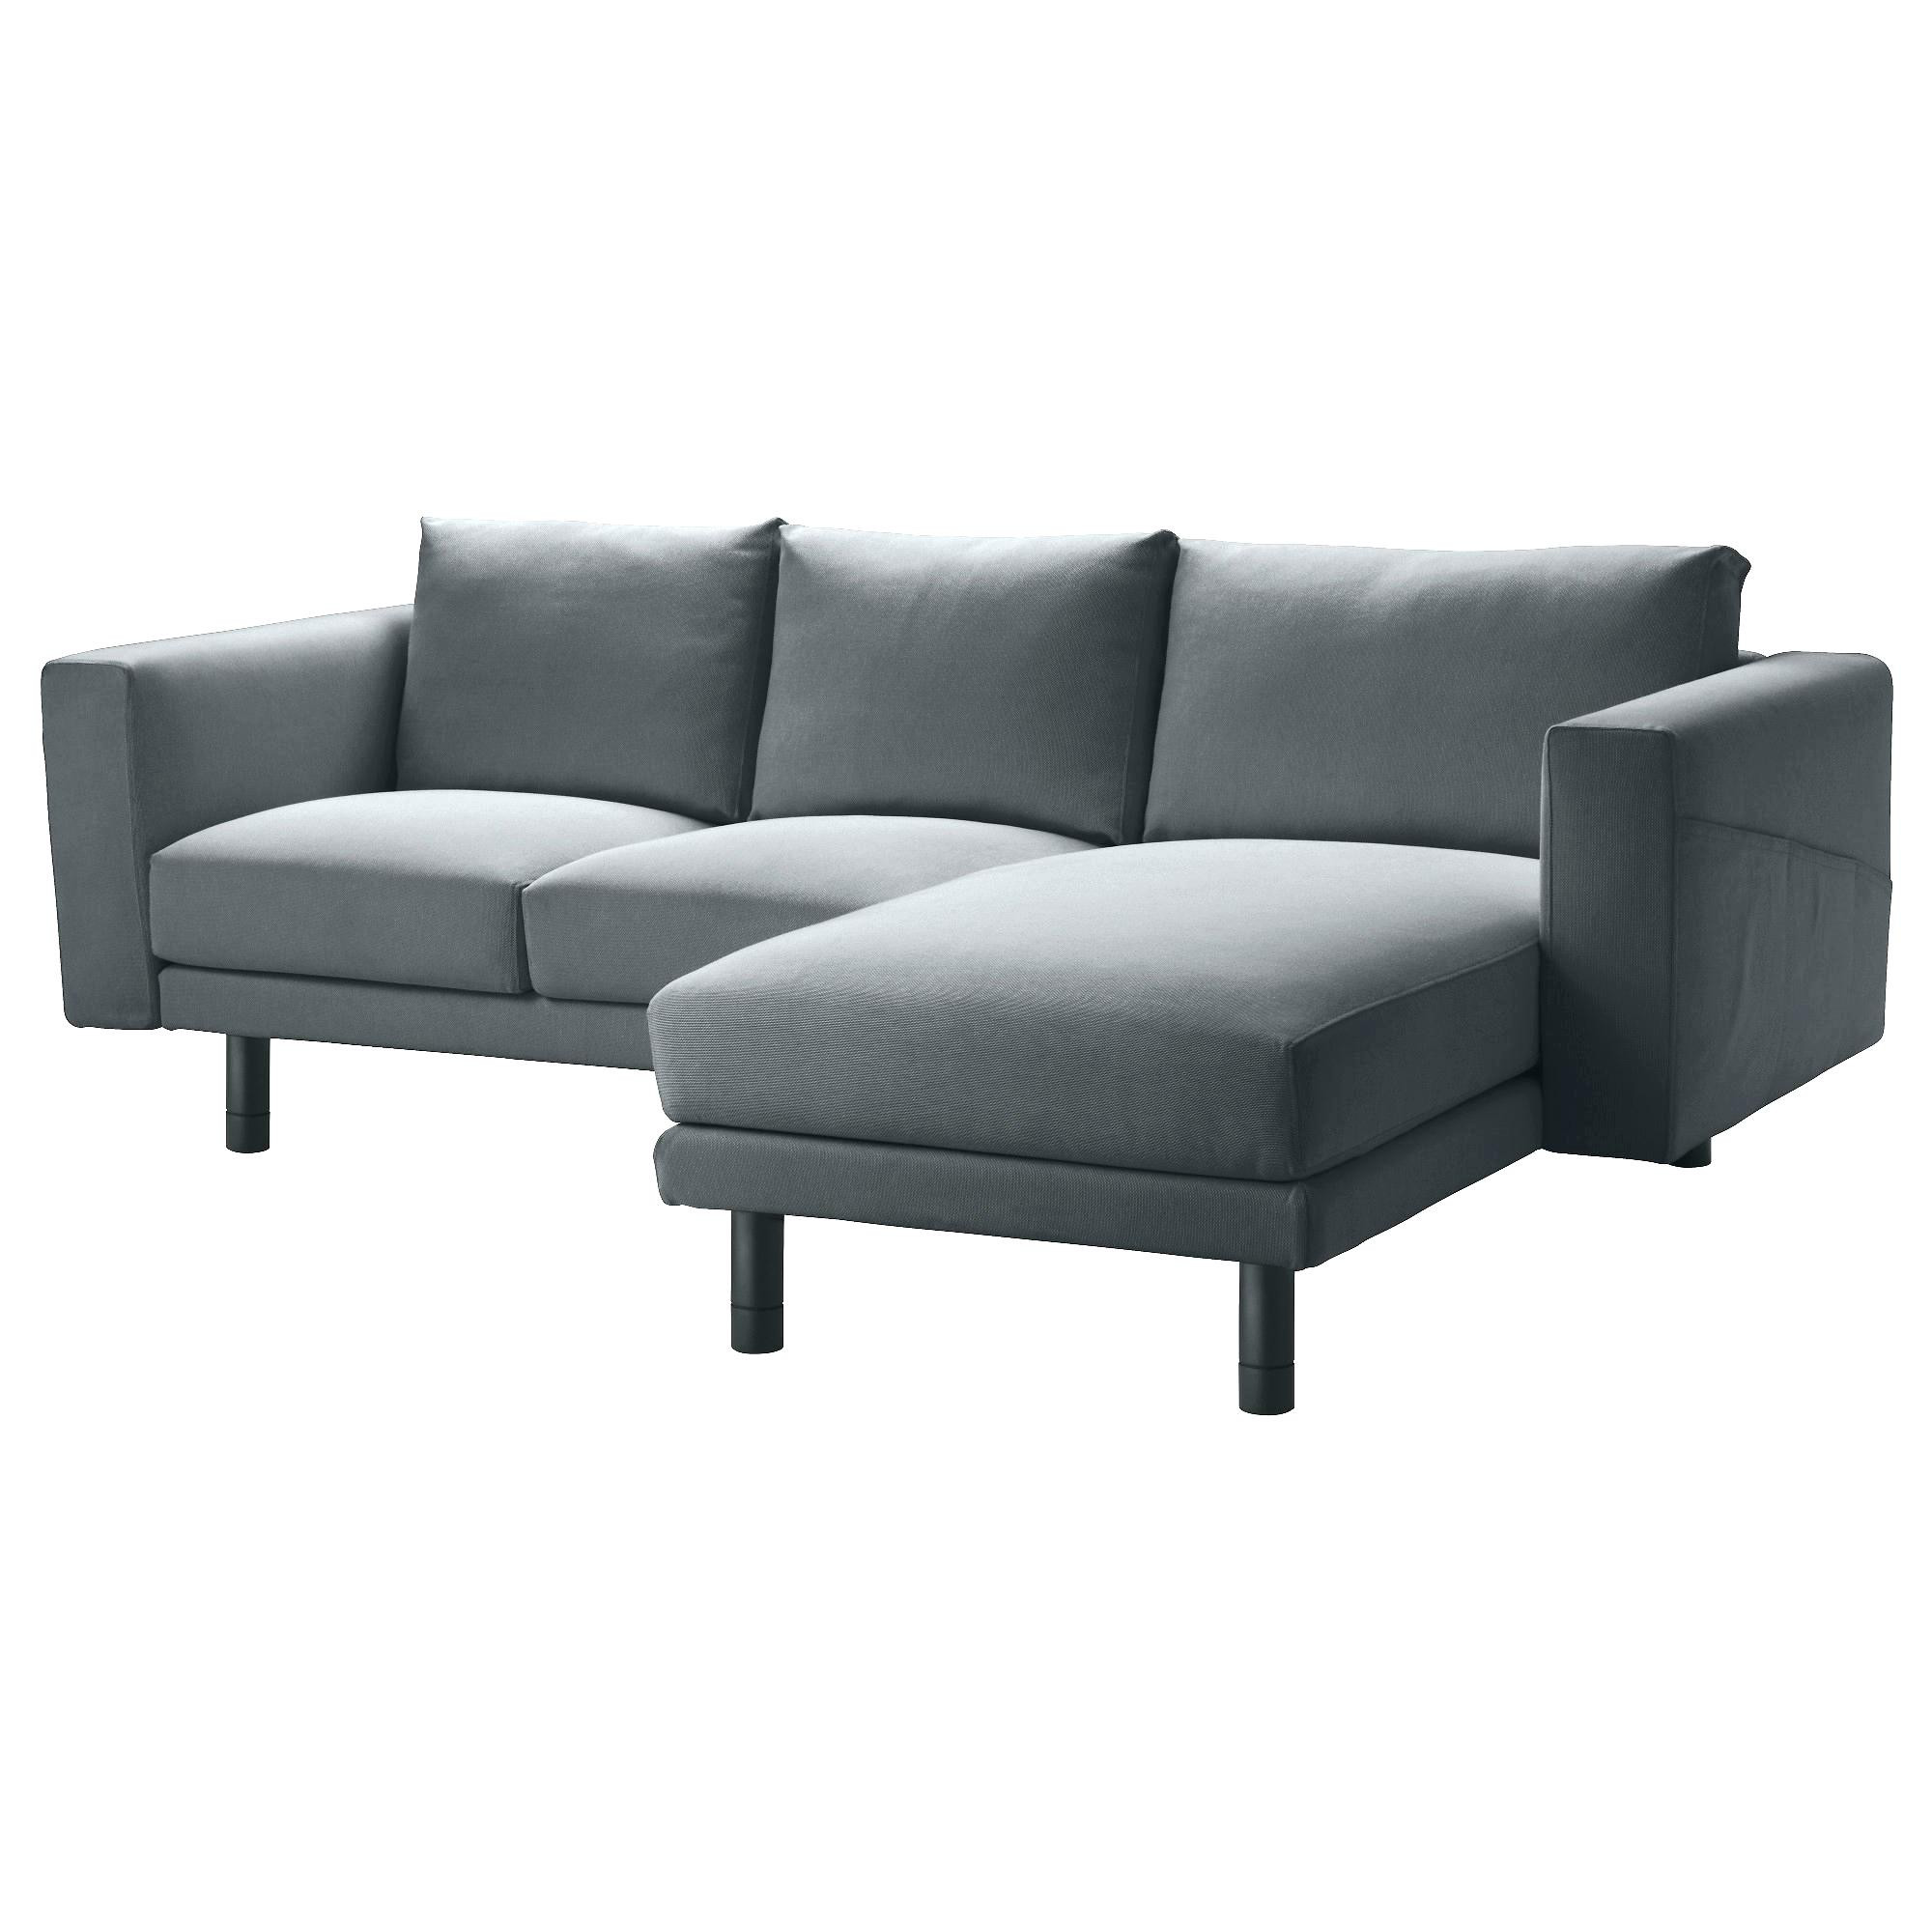 Sofa Gebraucht
 Sofa Ausziehbar Zweisitzer Ausziehbare Sofas Gebraucht Mit